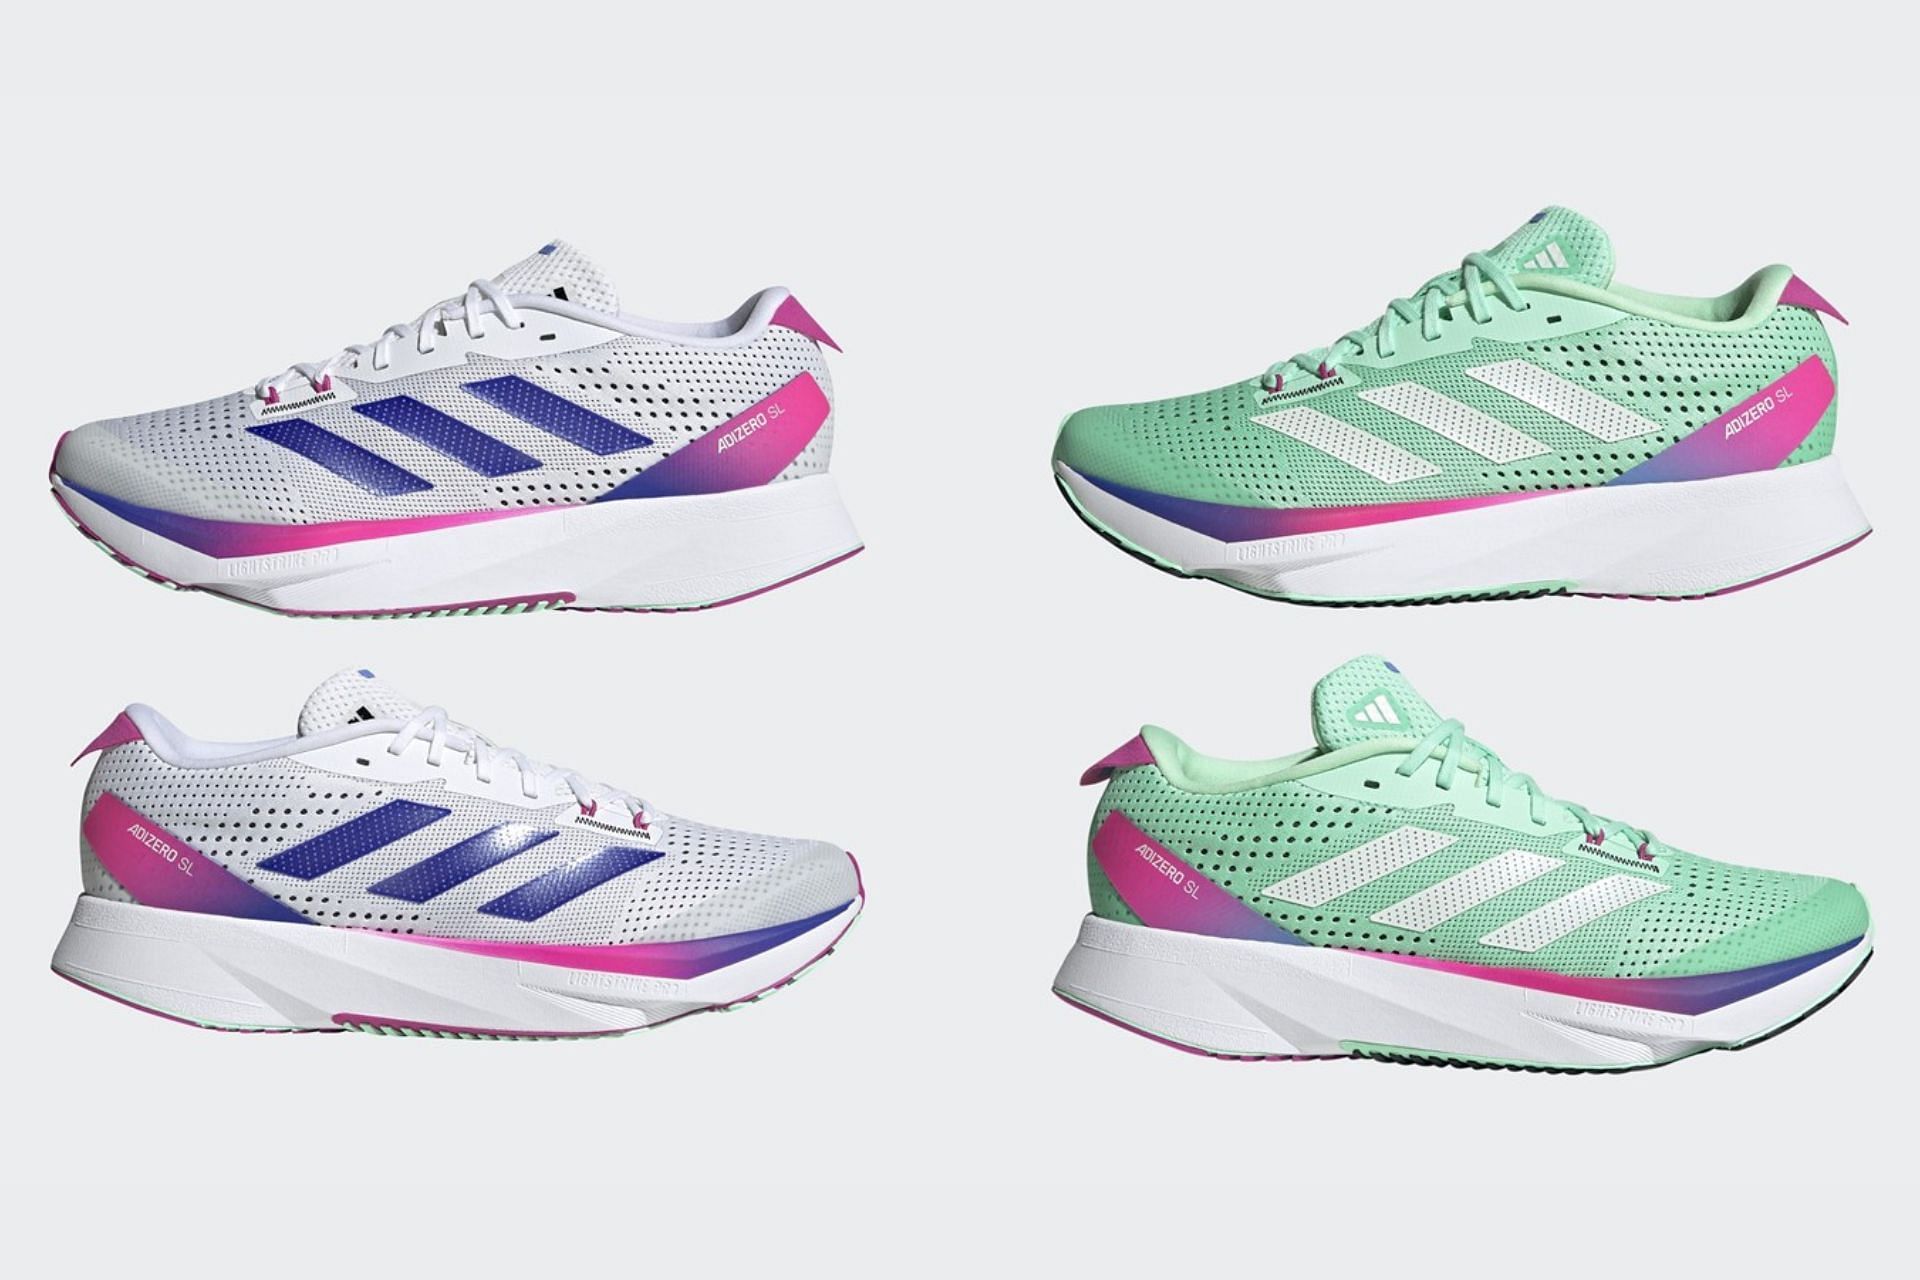 Adizero sl: Where to buy Adidas ADIZERO SL sneakers? Price, release date,  and more explored